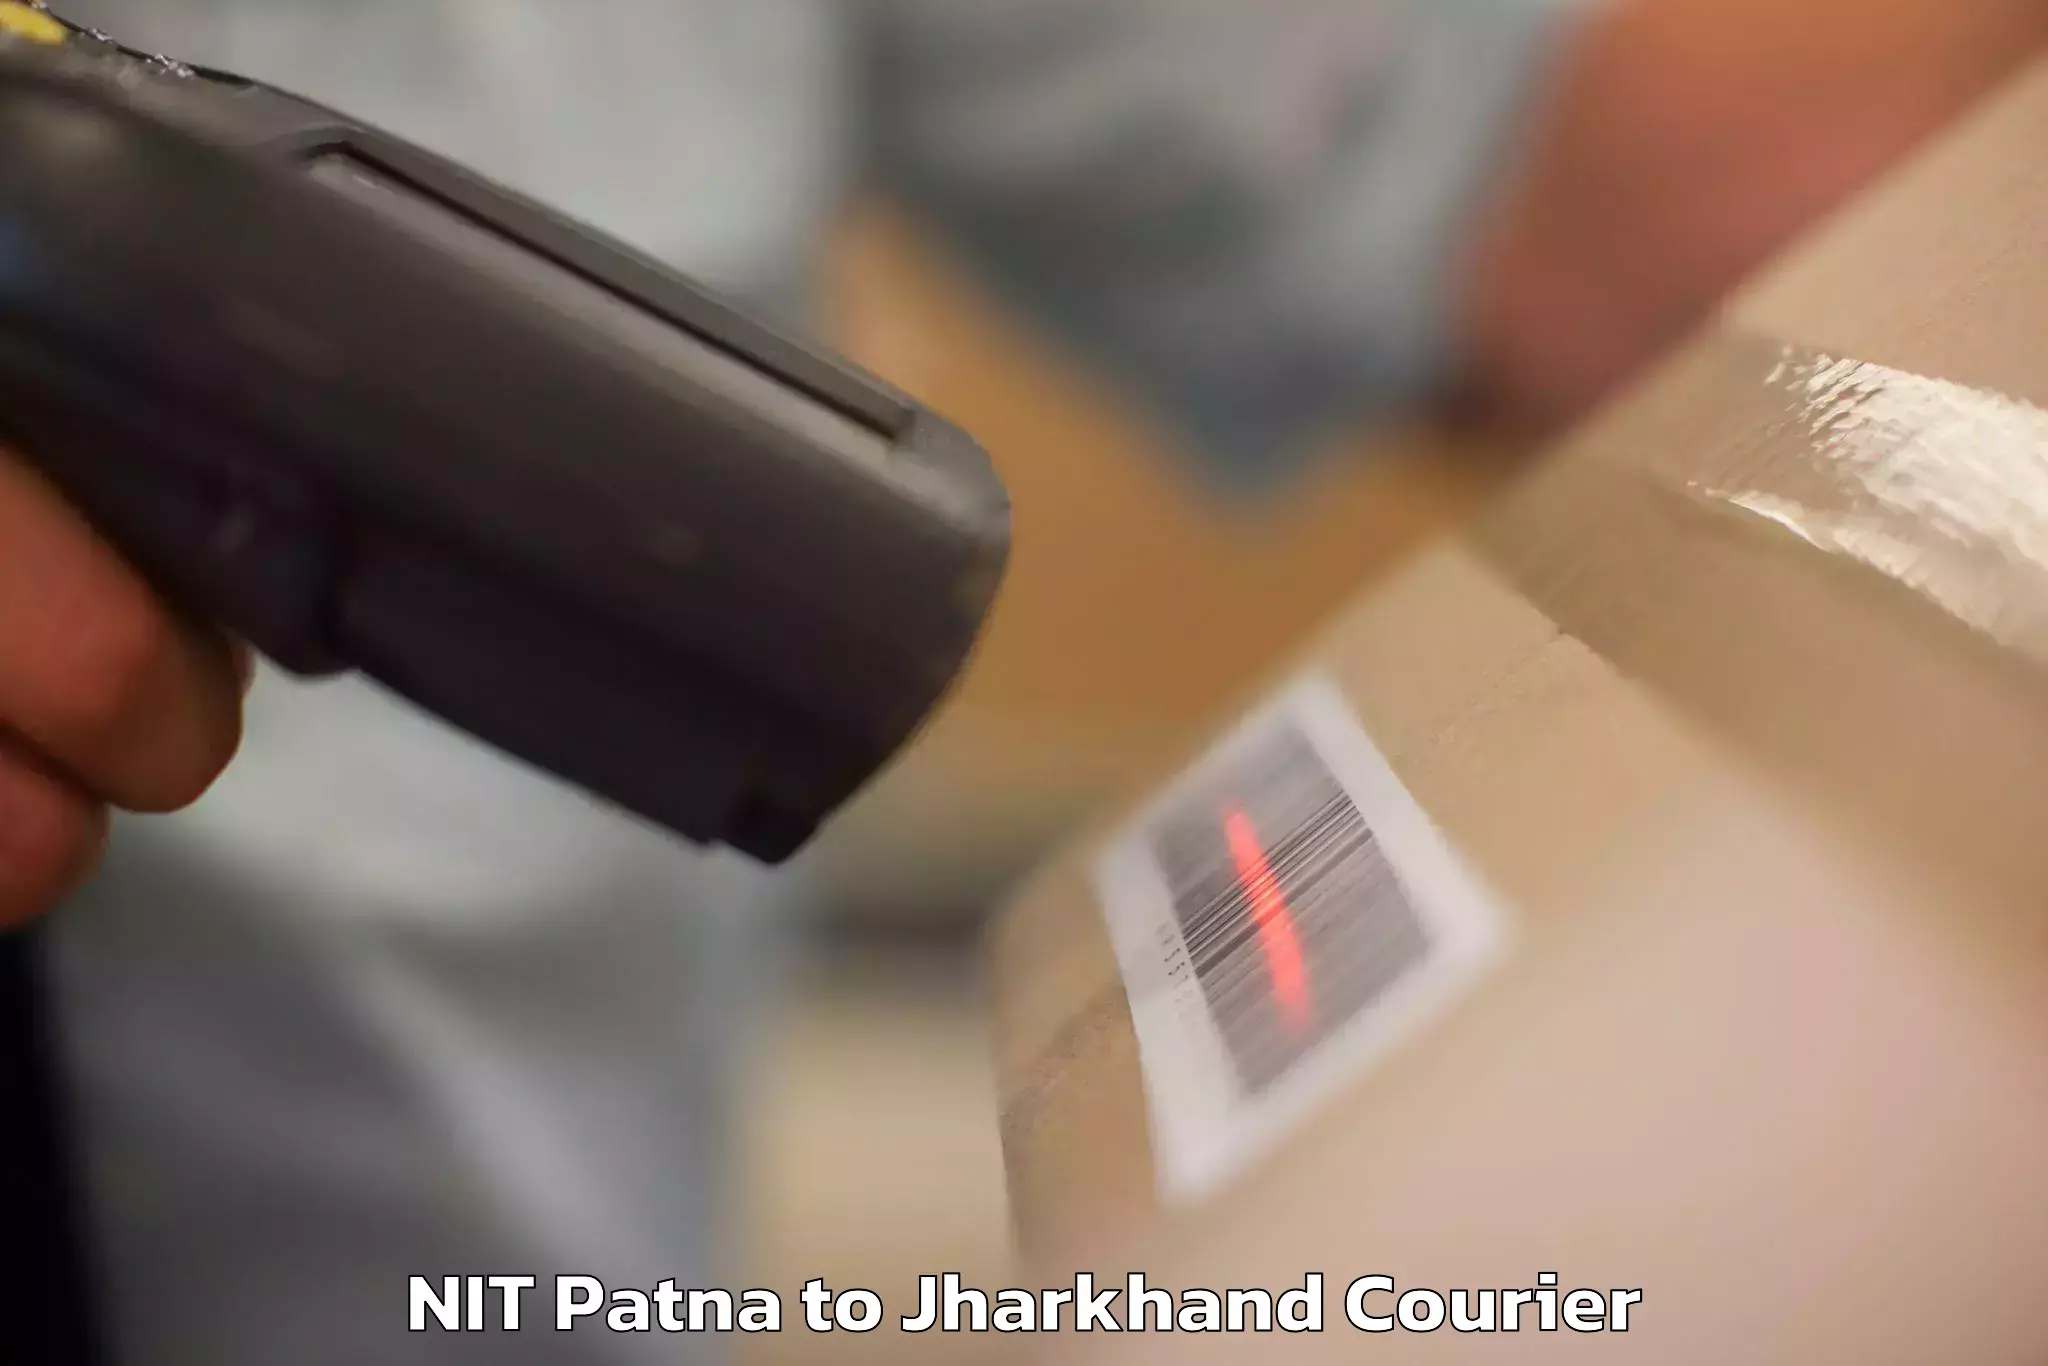 Personal effects shipping NIT Patna to Palamu